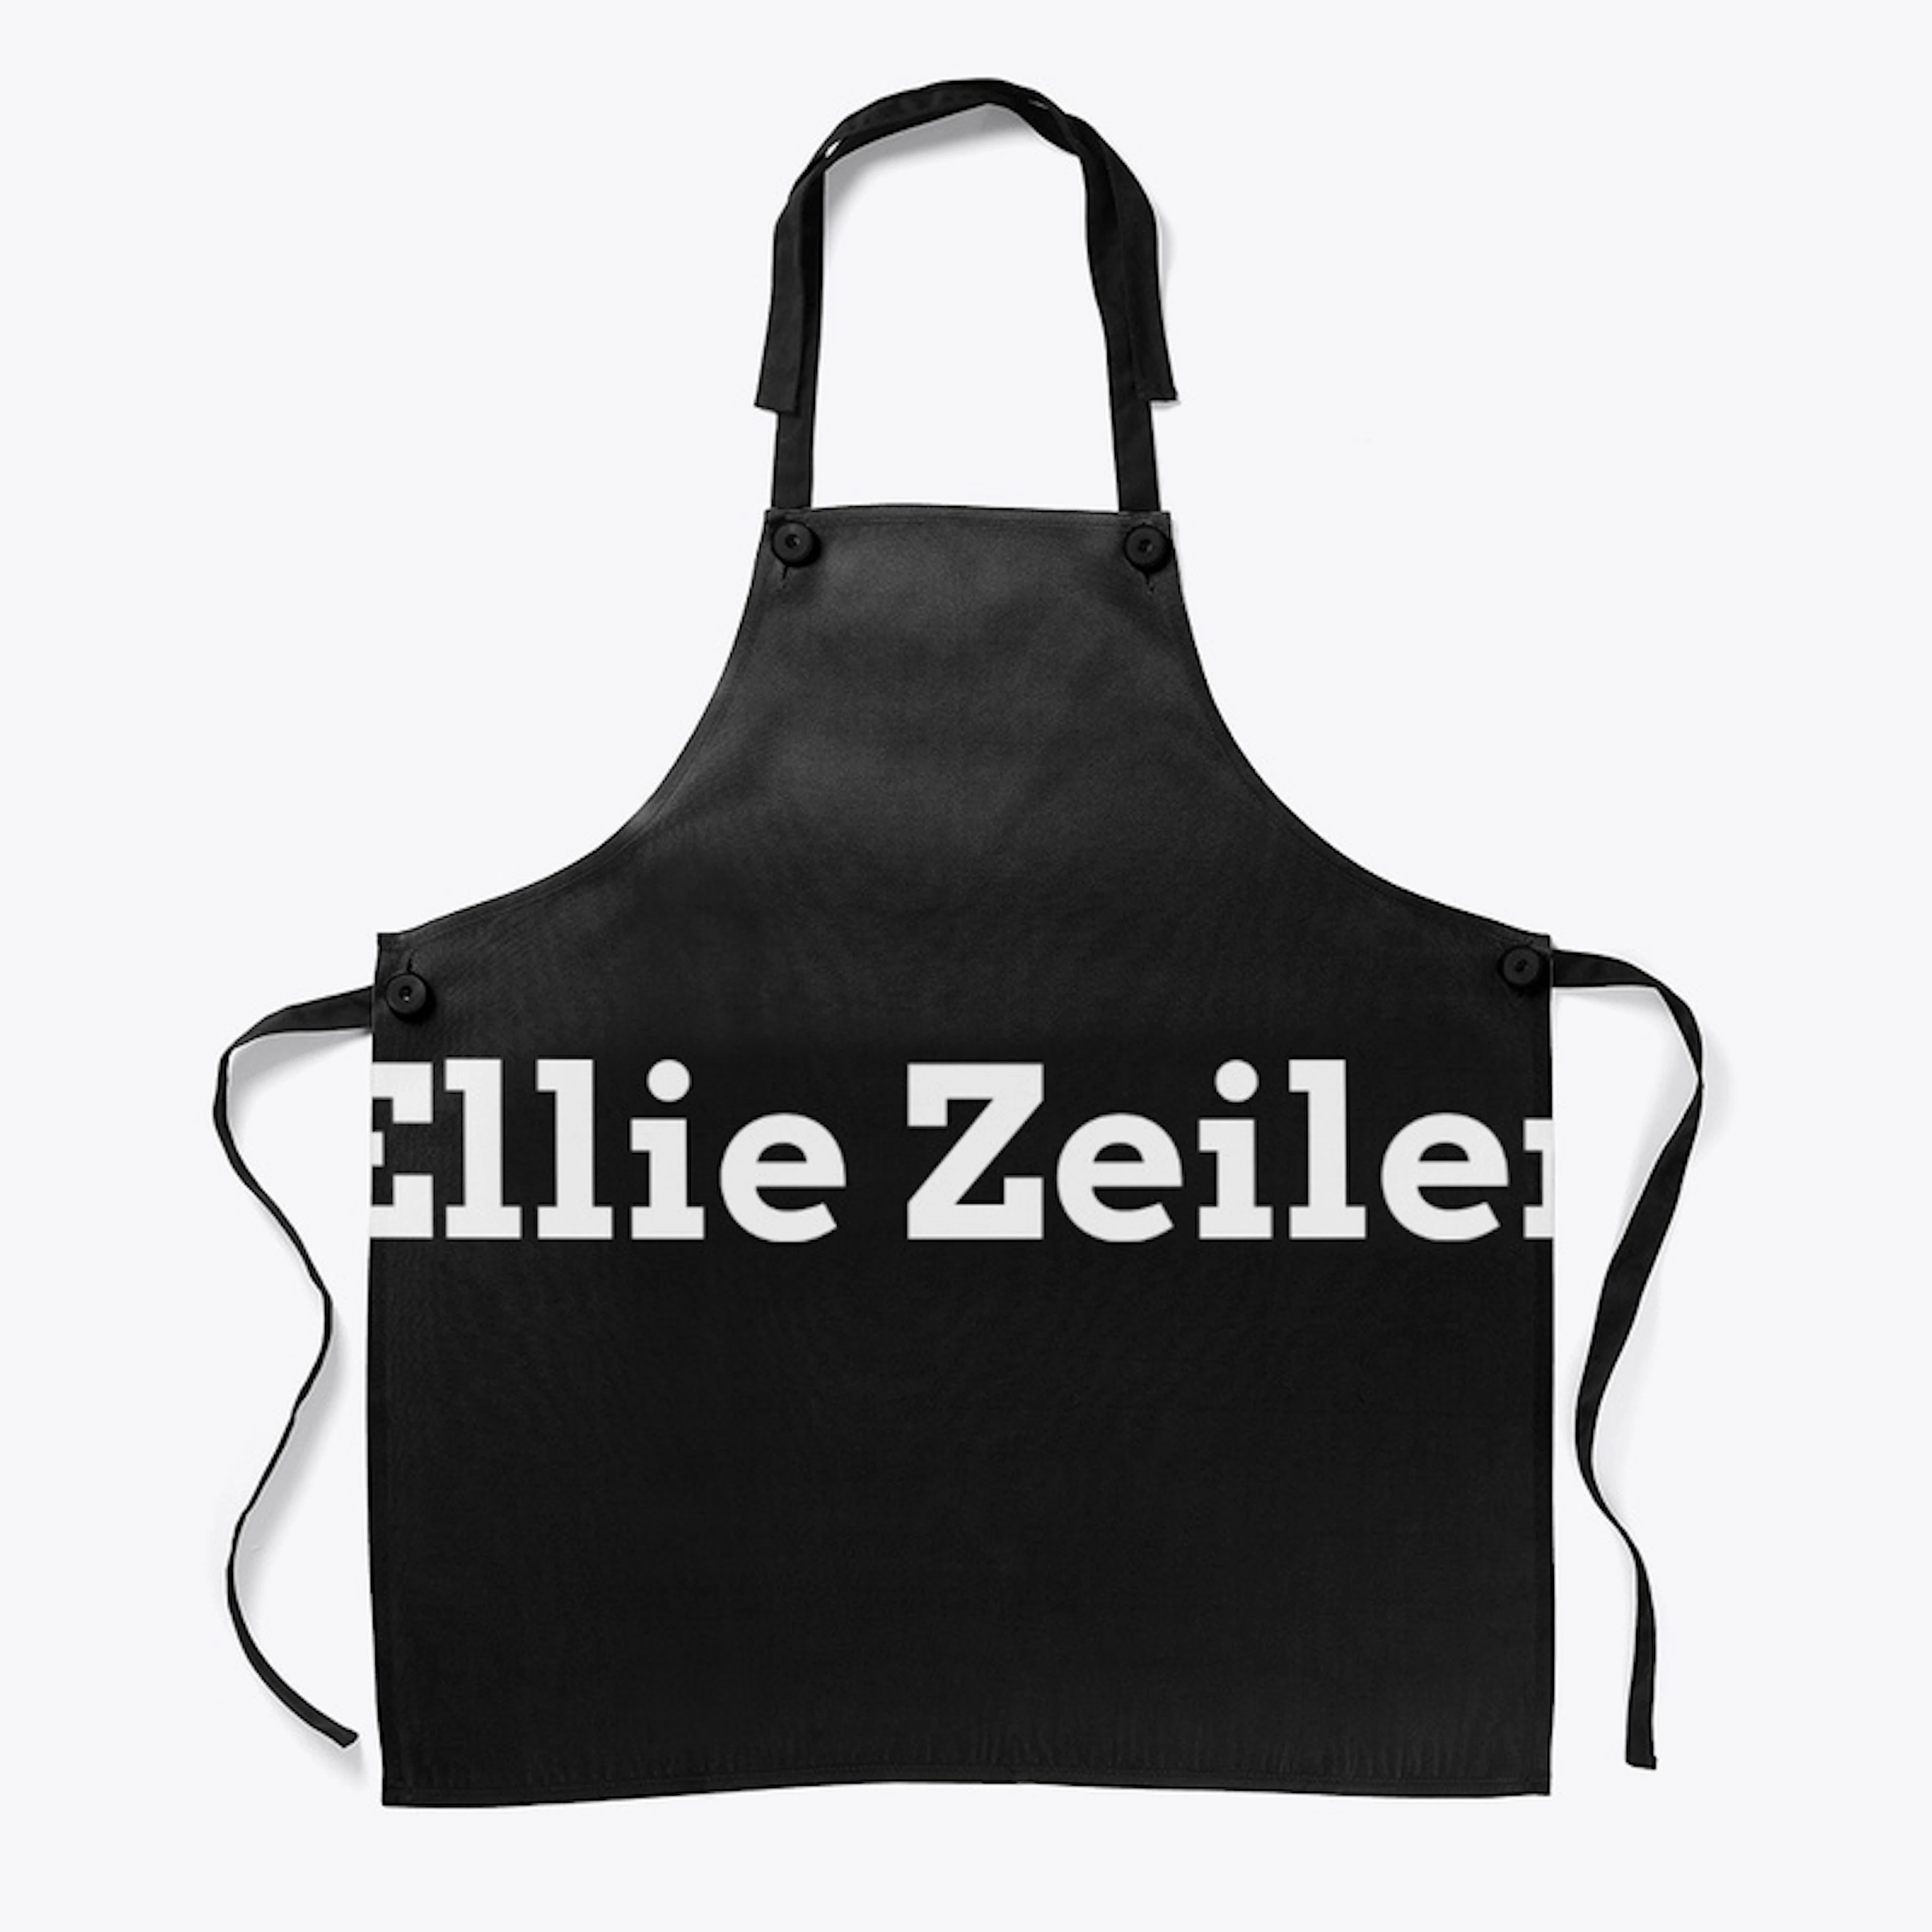 Ellie Zeiler Merch Logo